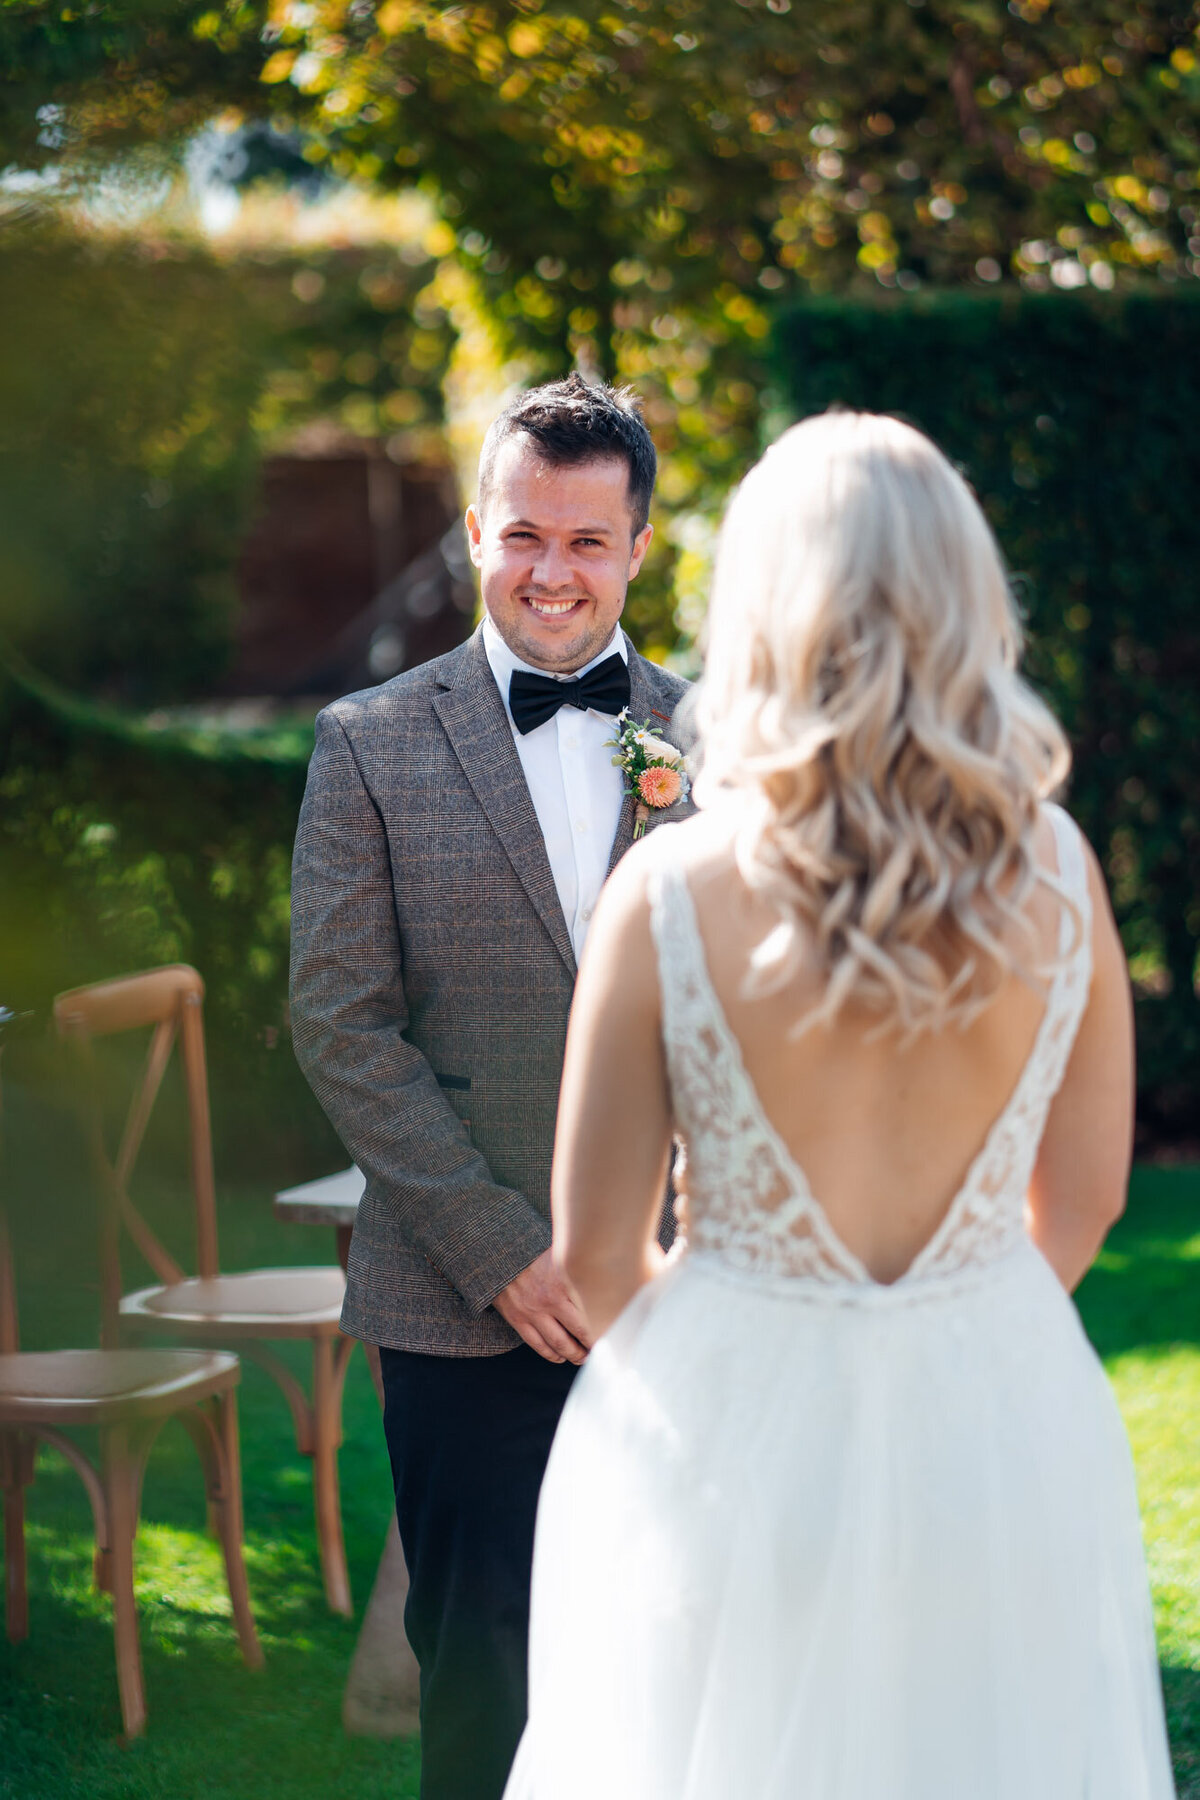 Pauntley-court-wedding-photographer-groom-during-outdoor-ceremony